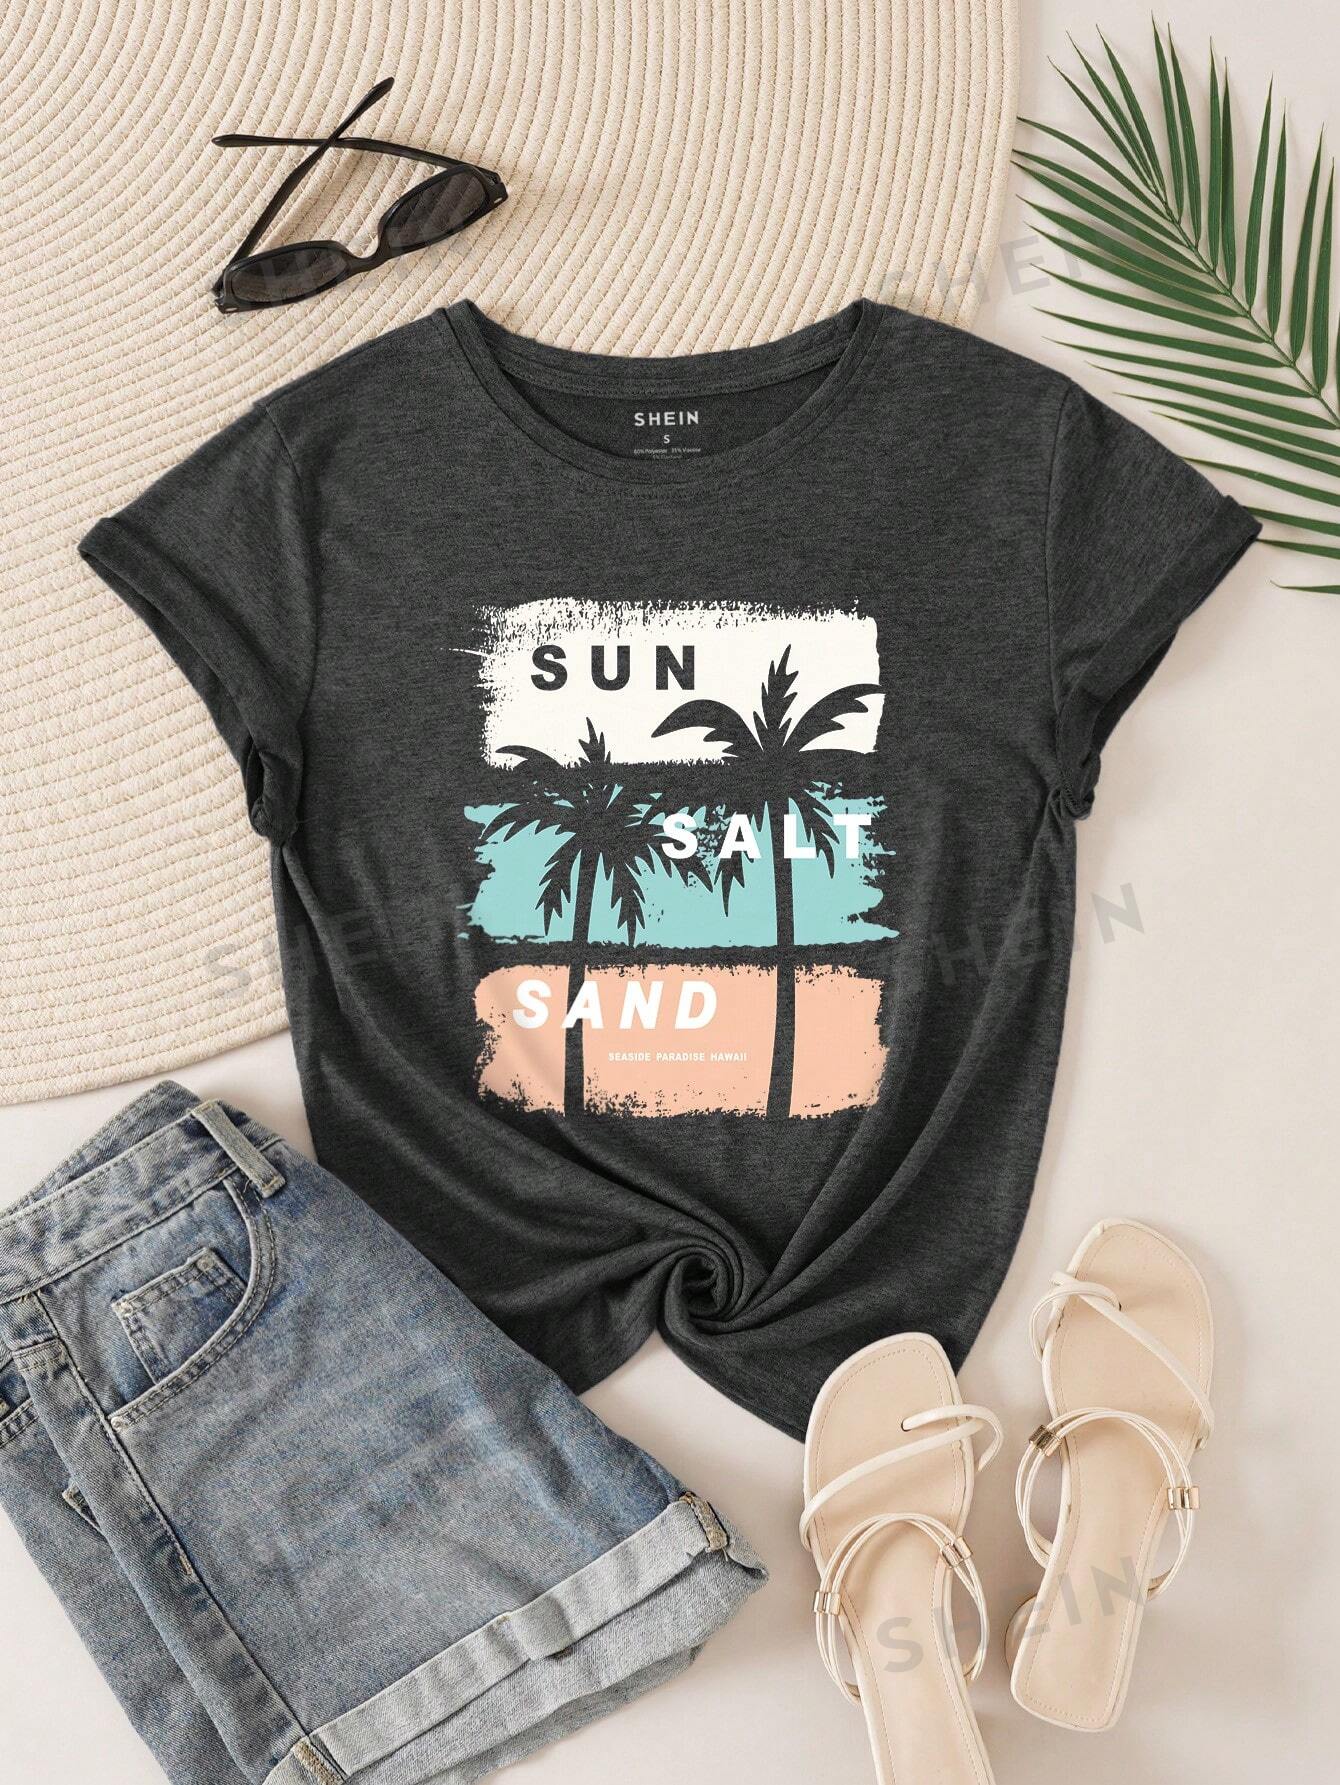 SHEIN LUNE Футболка контрастного цвета с принтом кокосовой пальмы и букв, темно-серый shein lune женская футболка с короткими рукавами темно серый